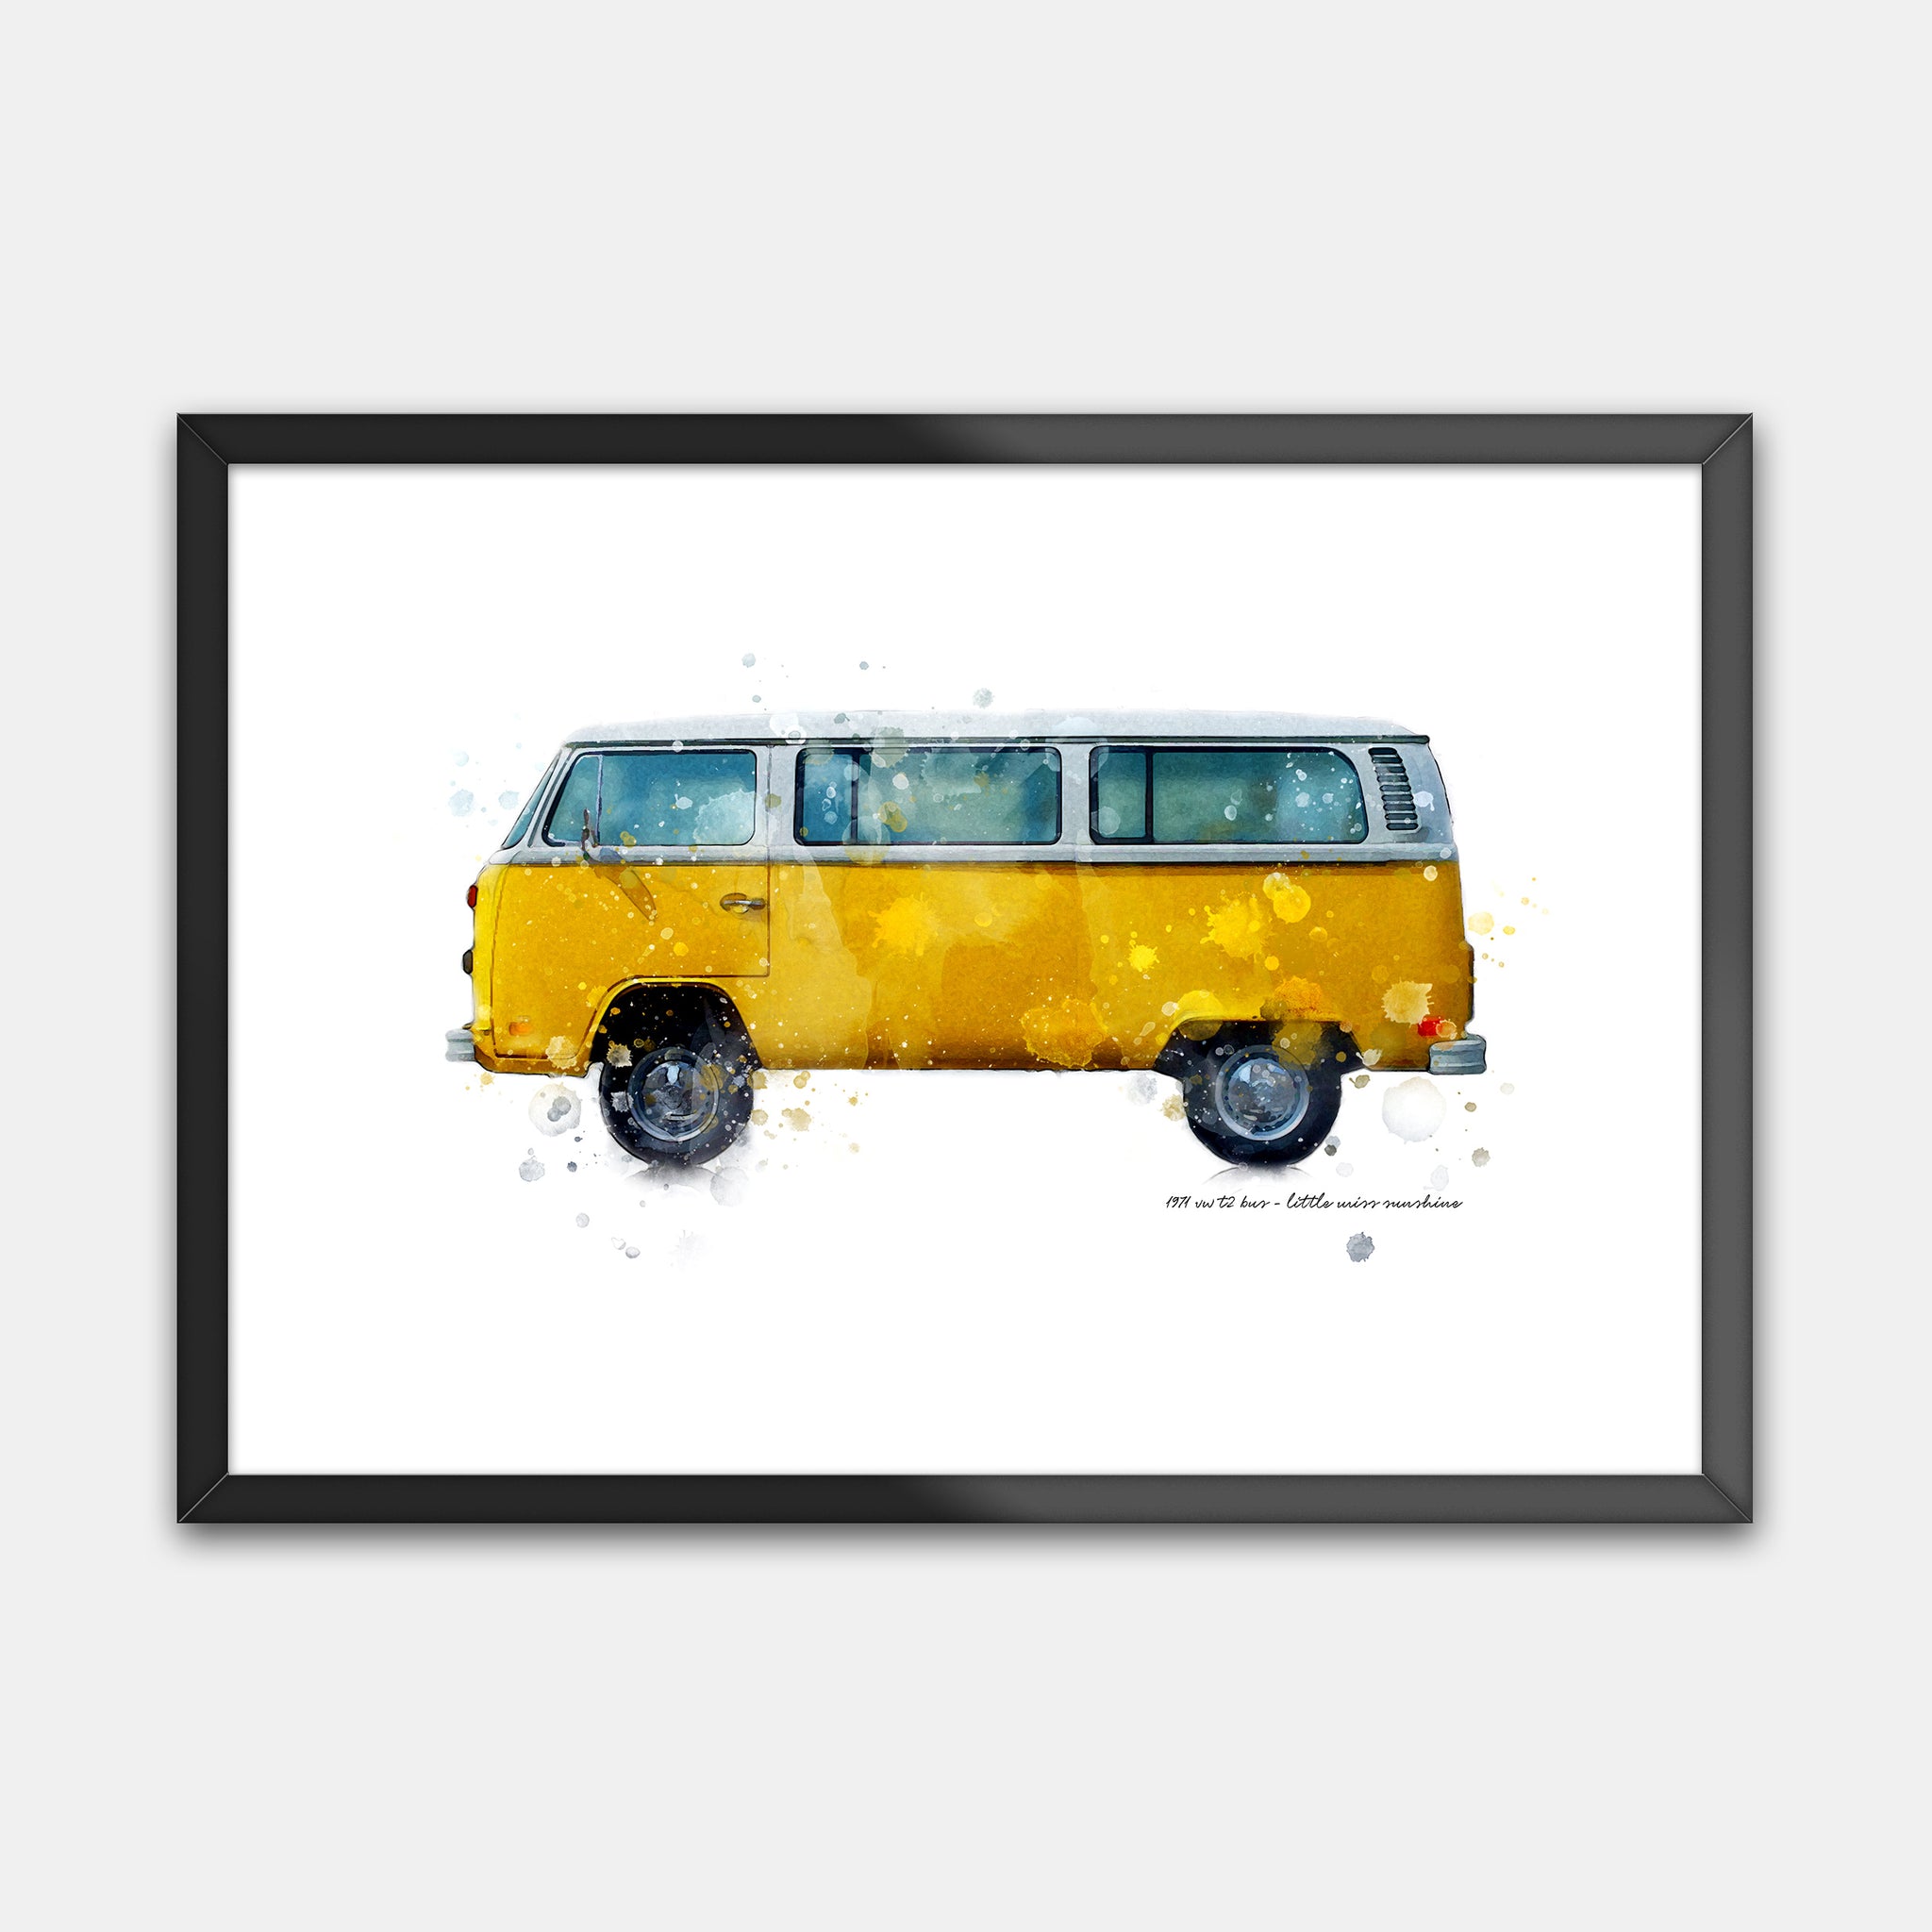 1973 Volkswagen Transporter - "Little Miss Sunshine"